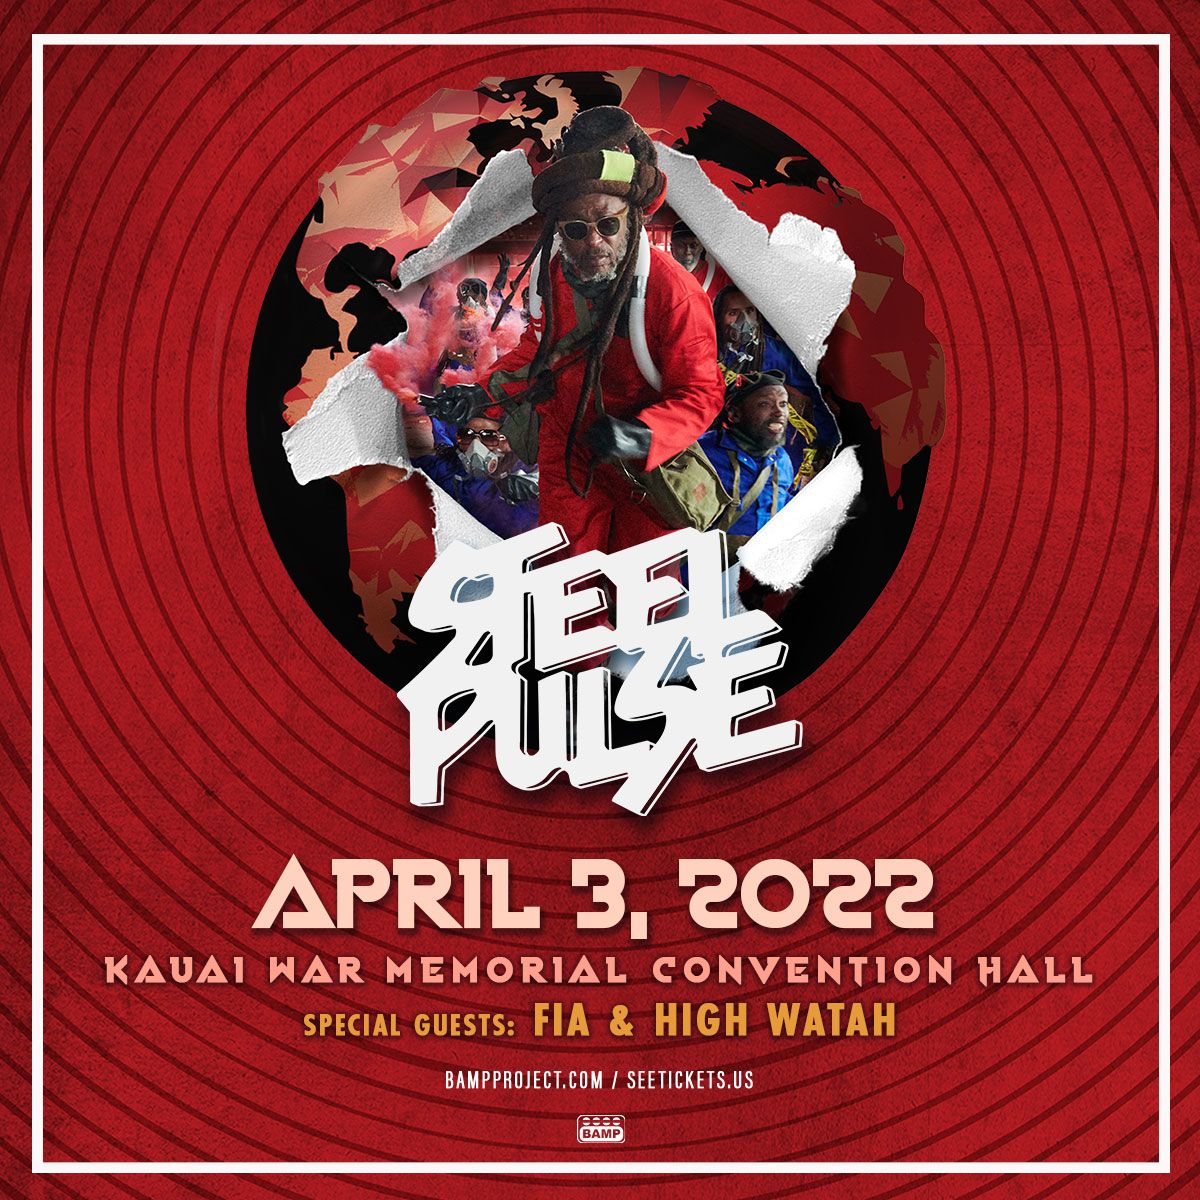 SteelPulse-Kauai_ig_1600x1600.jpg